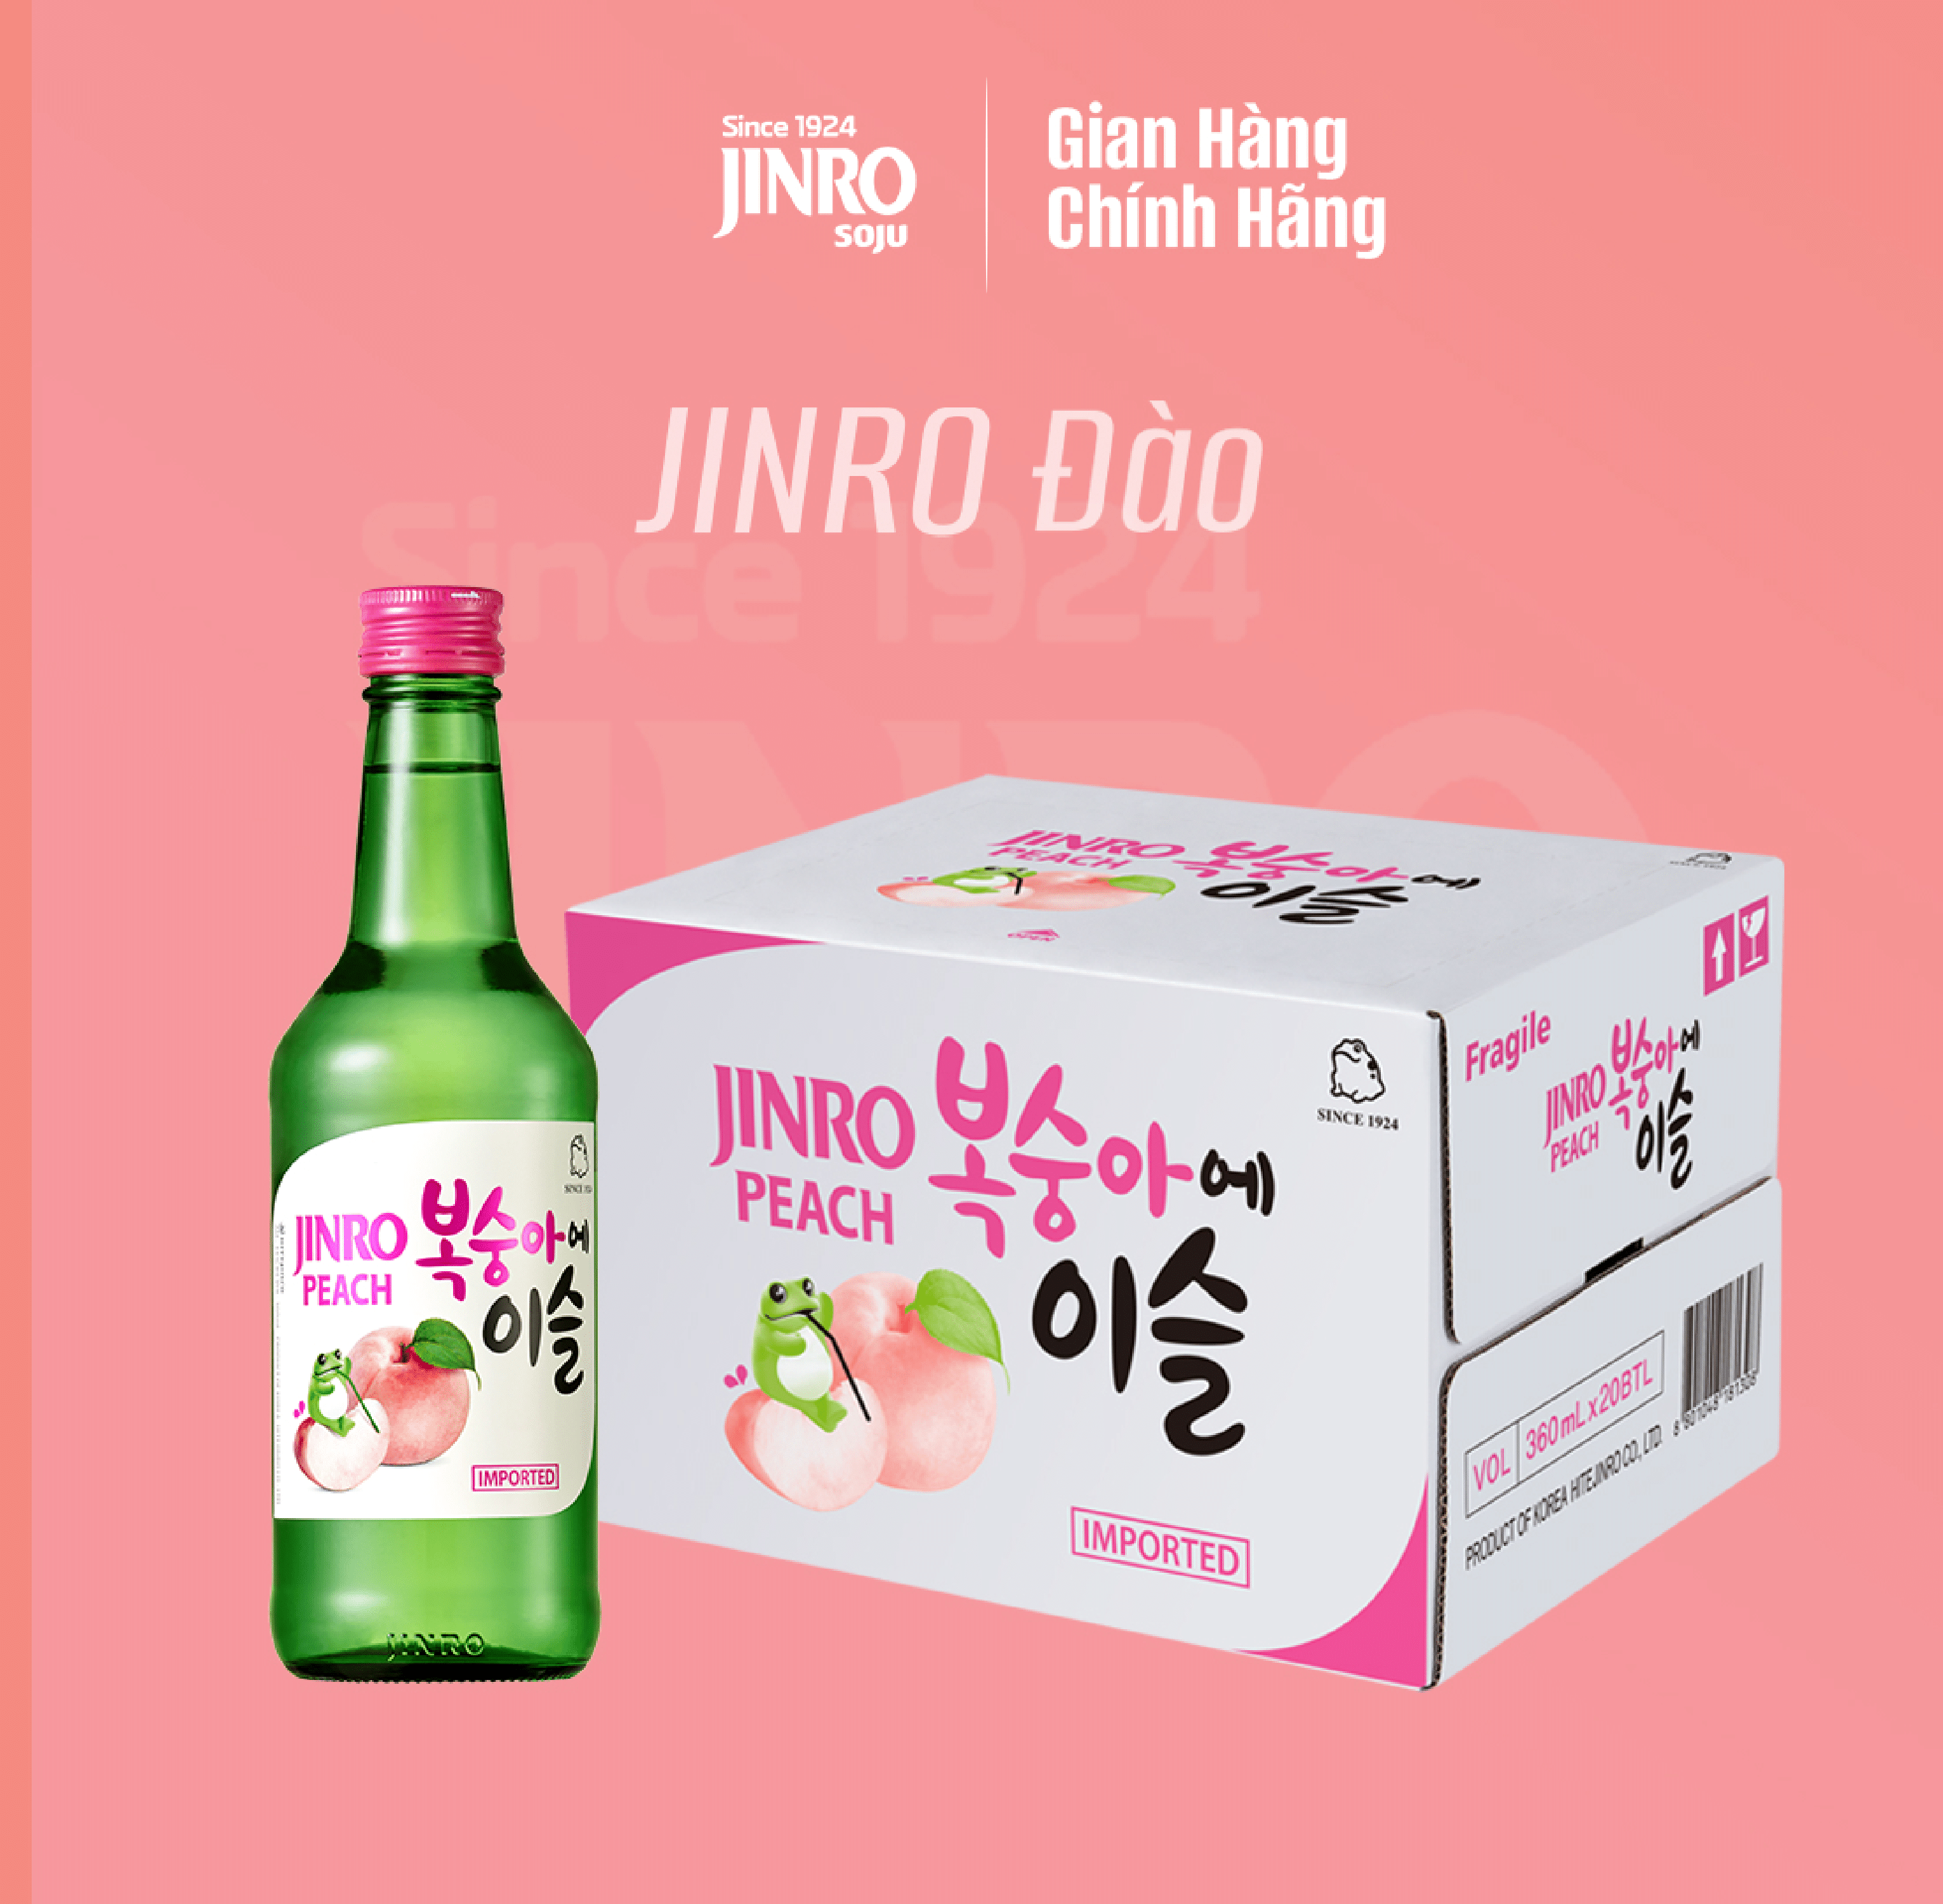 [CHÍNH HÃNG] Soju Hàn Quốc JINRO VỊ ĐÀO 360ml - Thùng 20 chai